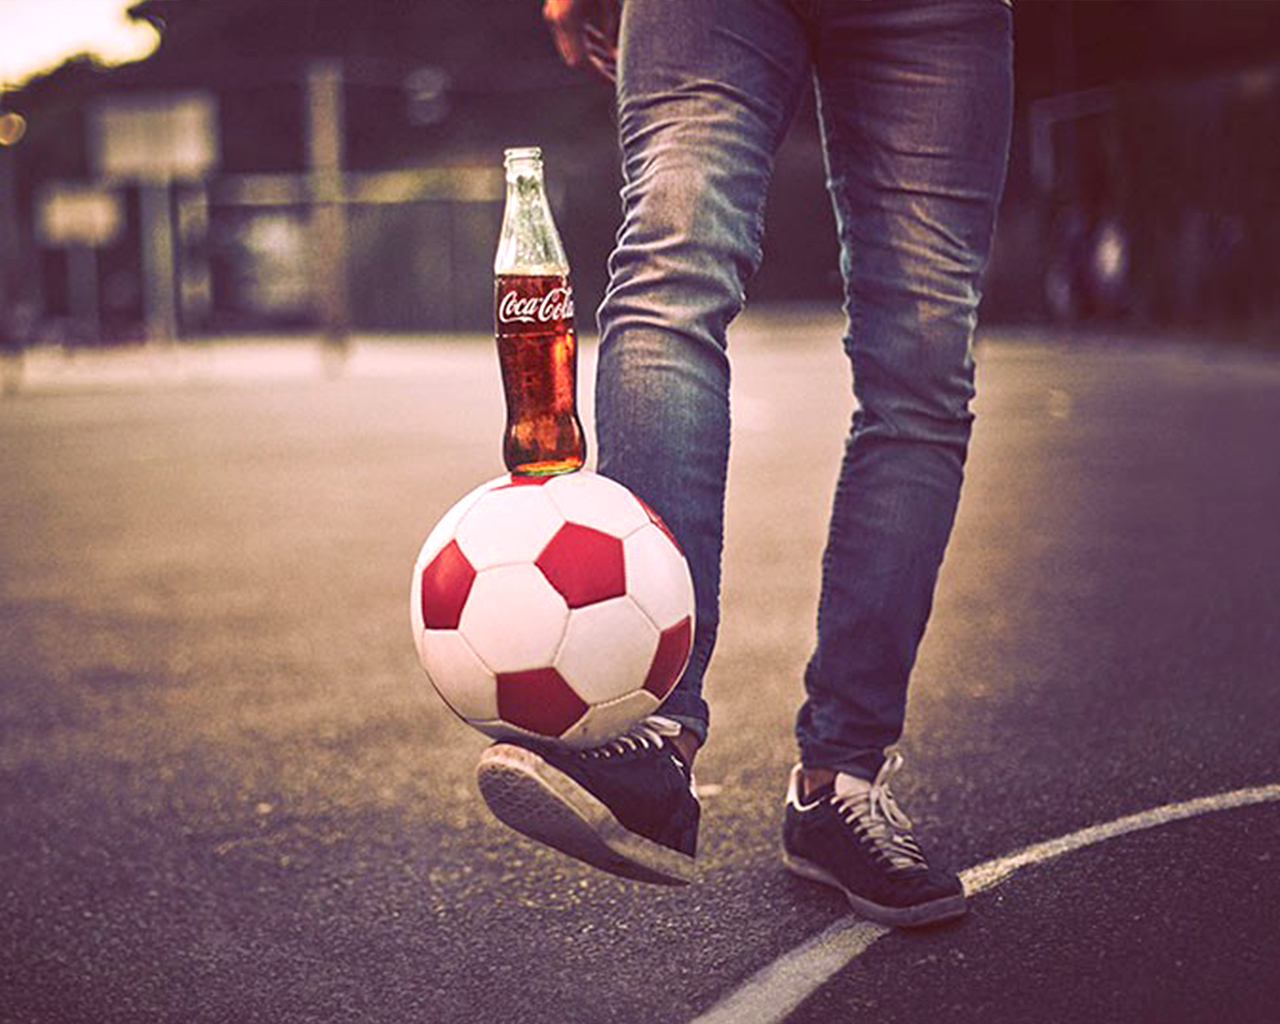 Een man die een voetbal op zijn voet houdt en een Coca-Cola fles op de voetbal plaatst